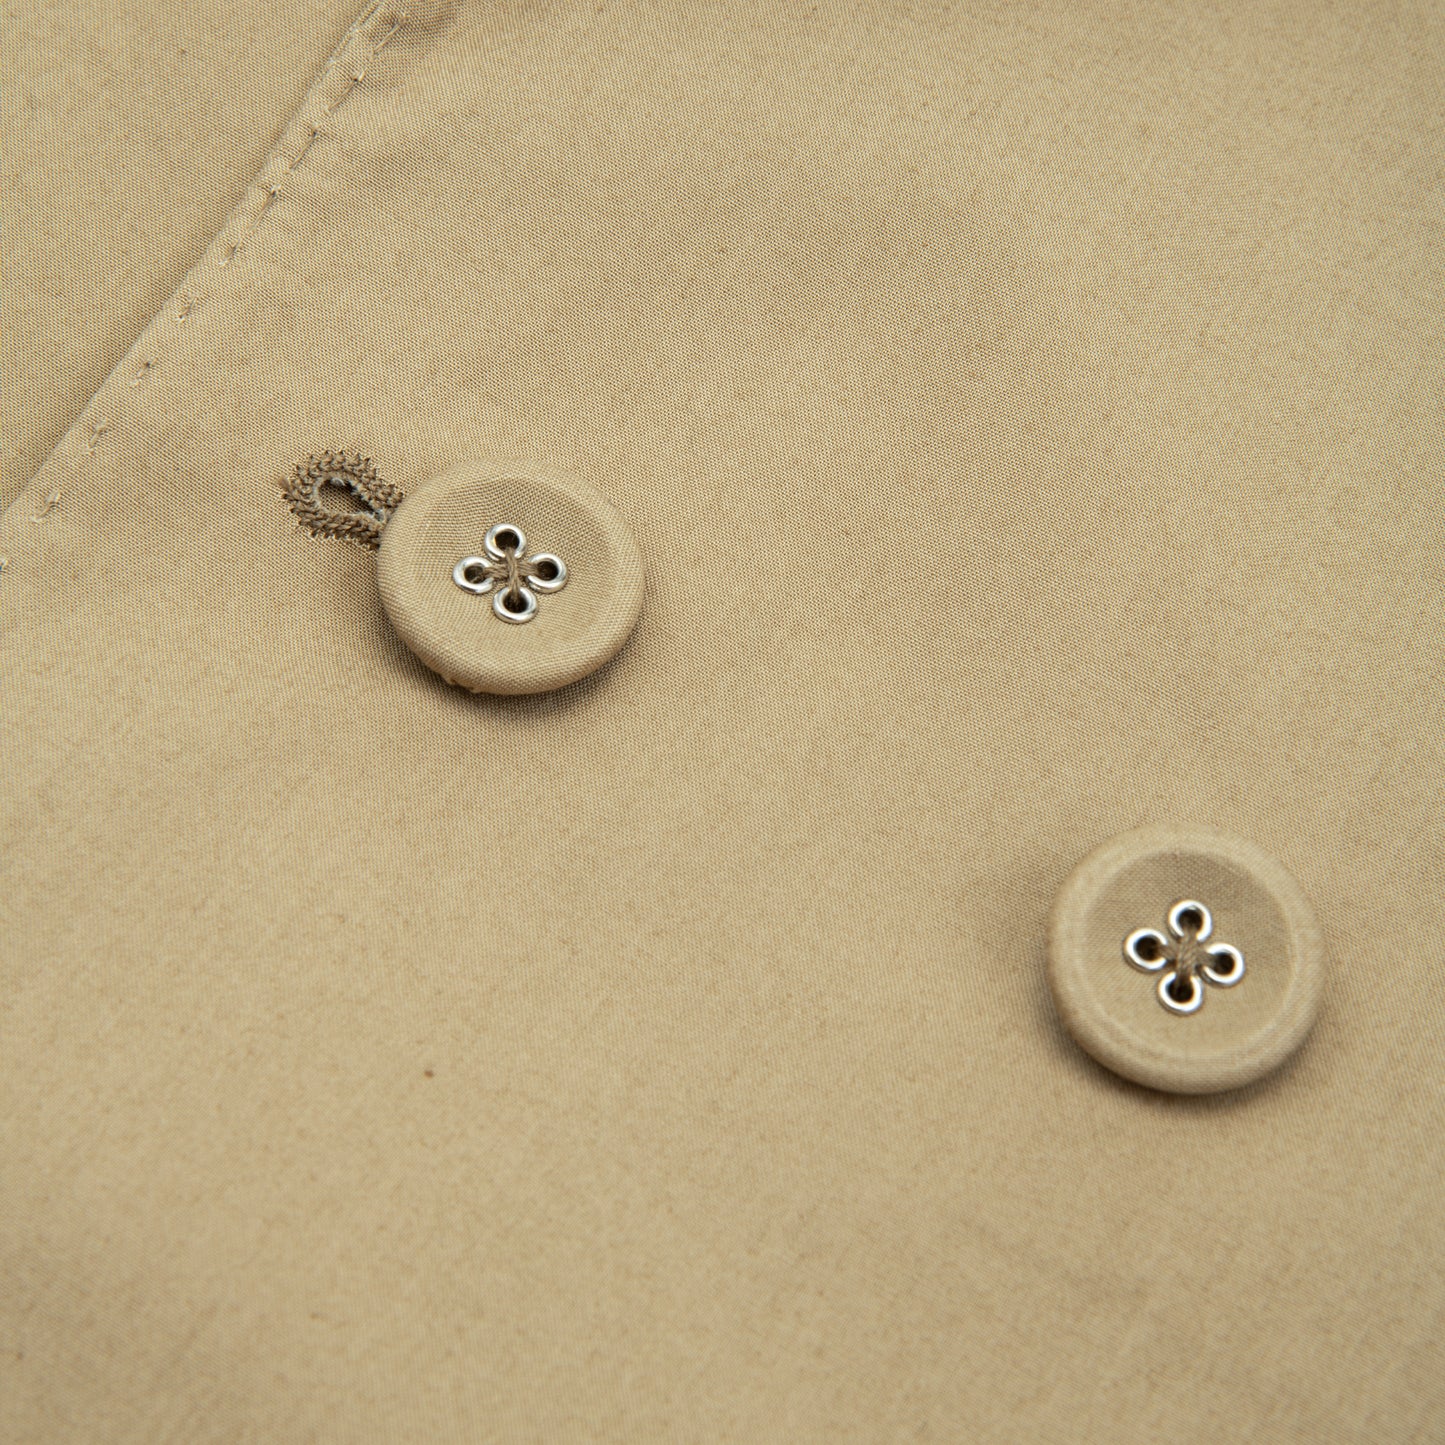 LEON Jacket Italian Cotton Poplin British Khaki